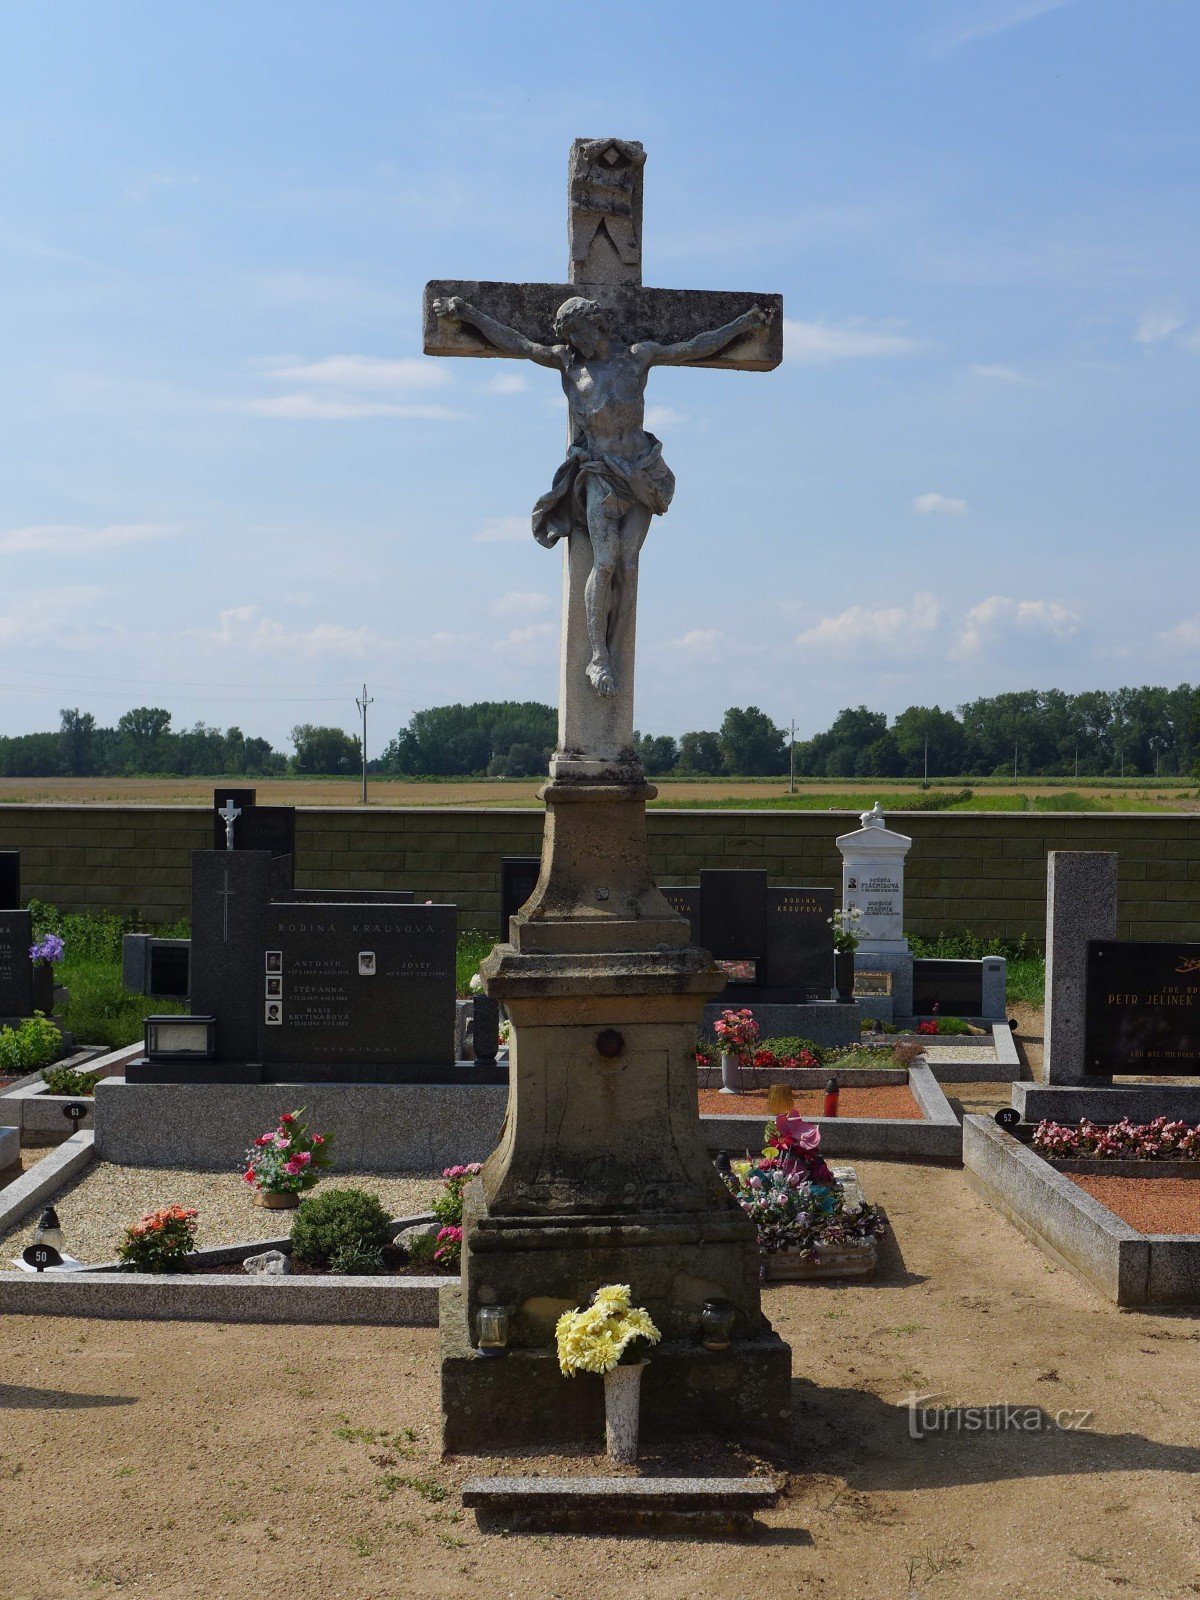 Nemčičky - cruz central no cemitério